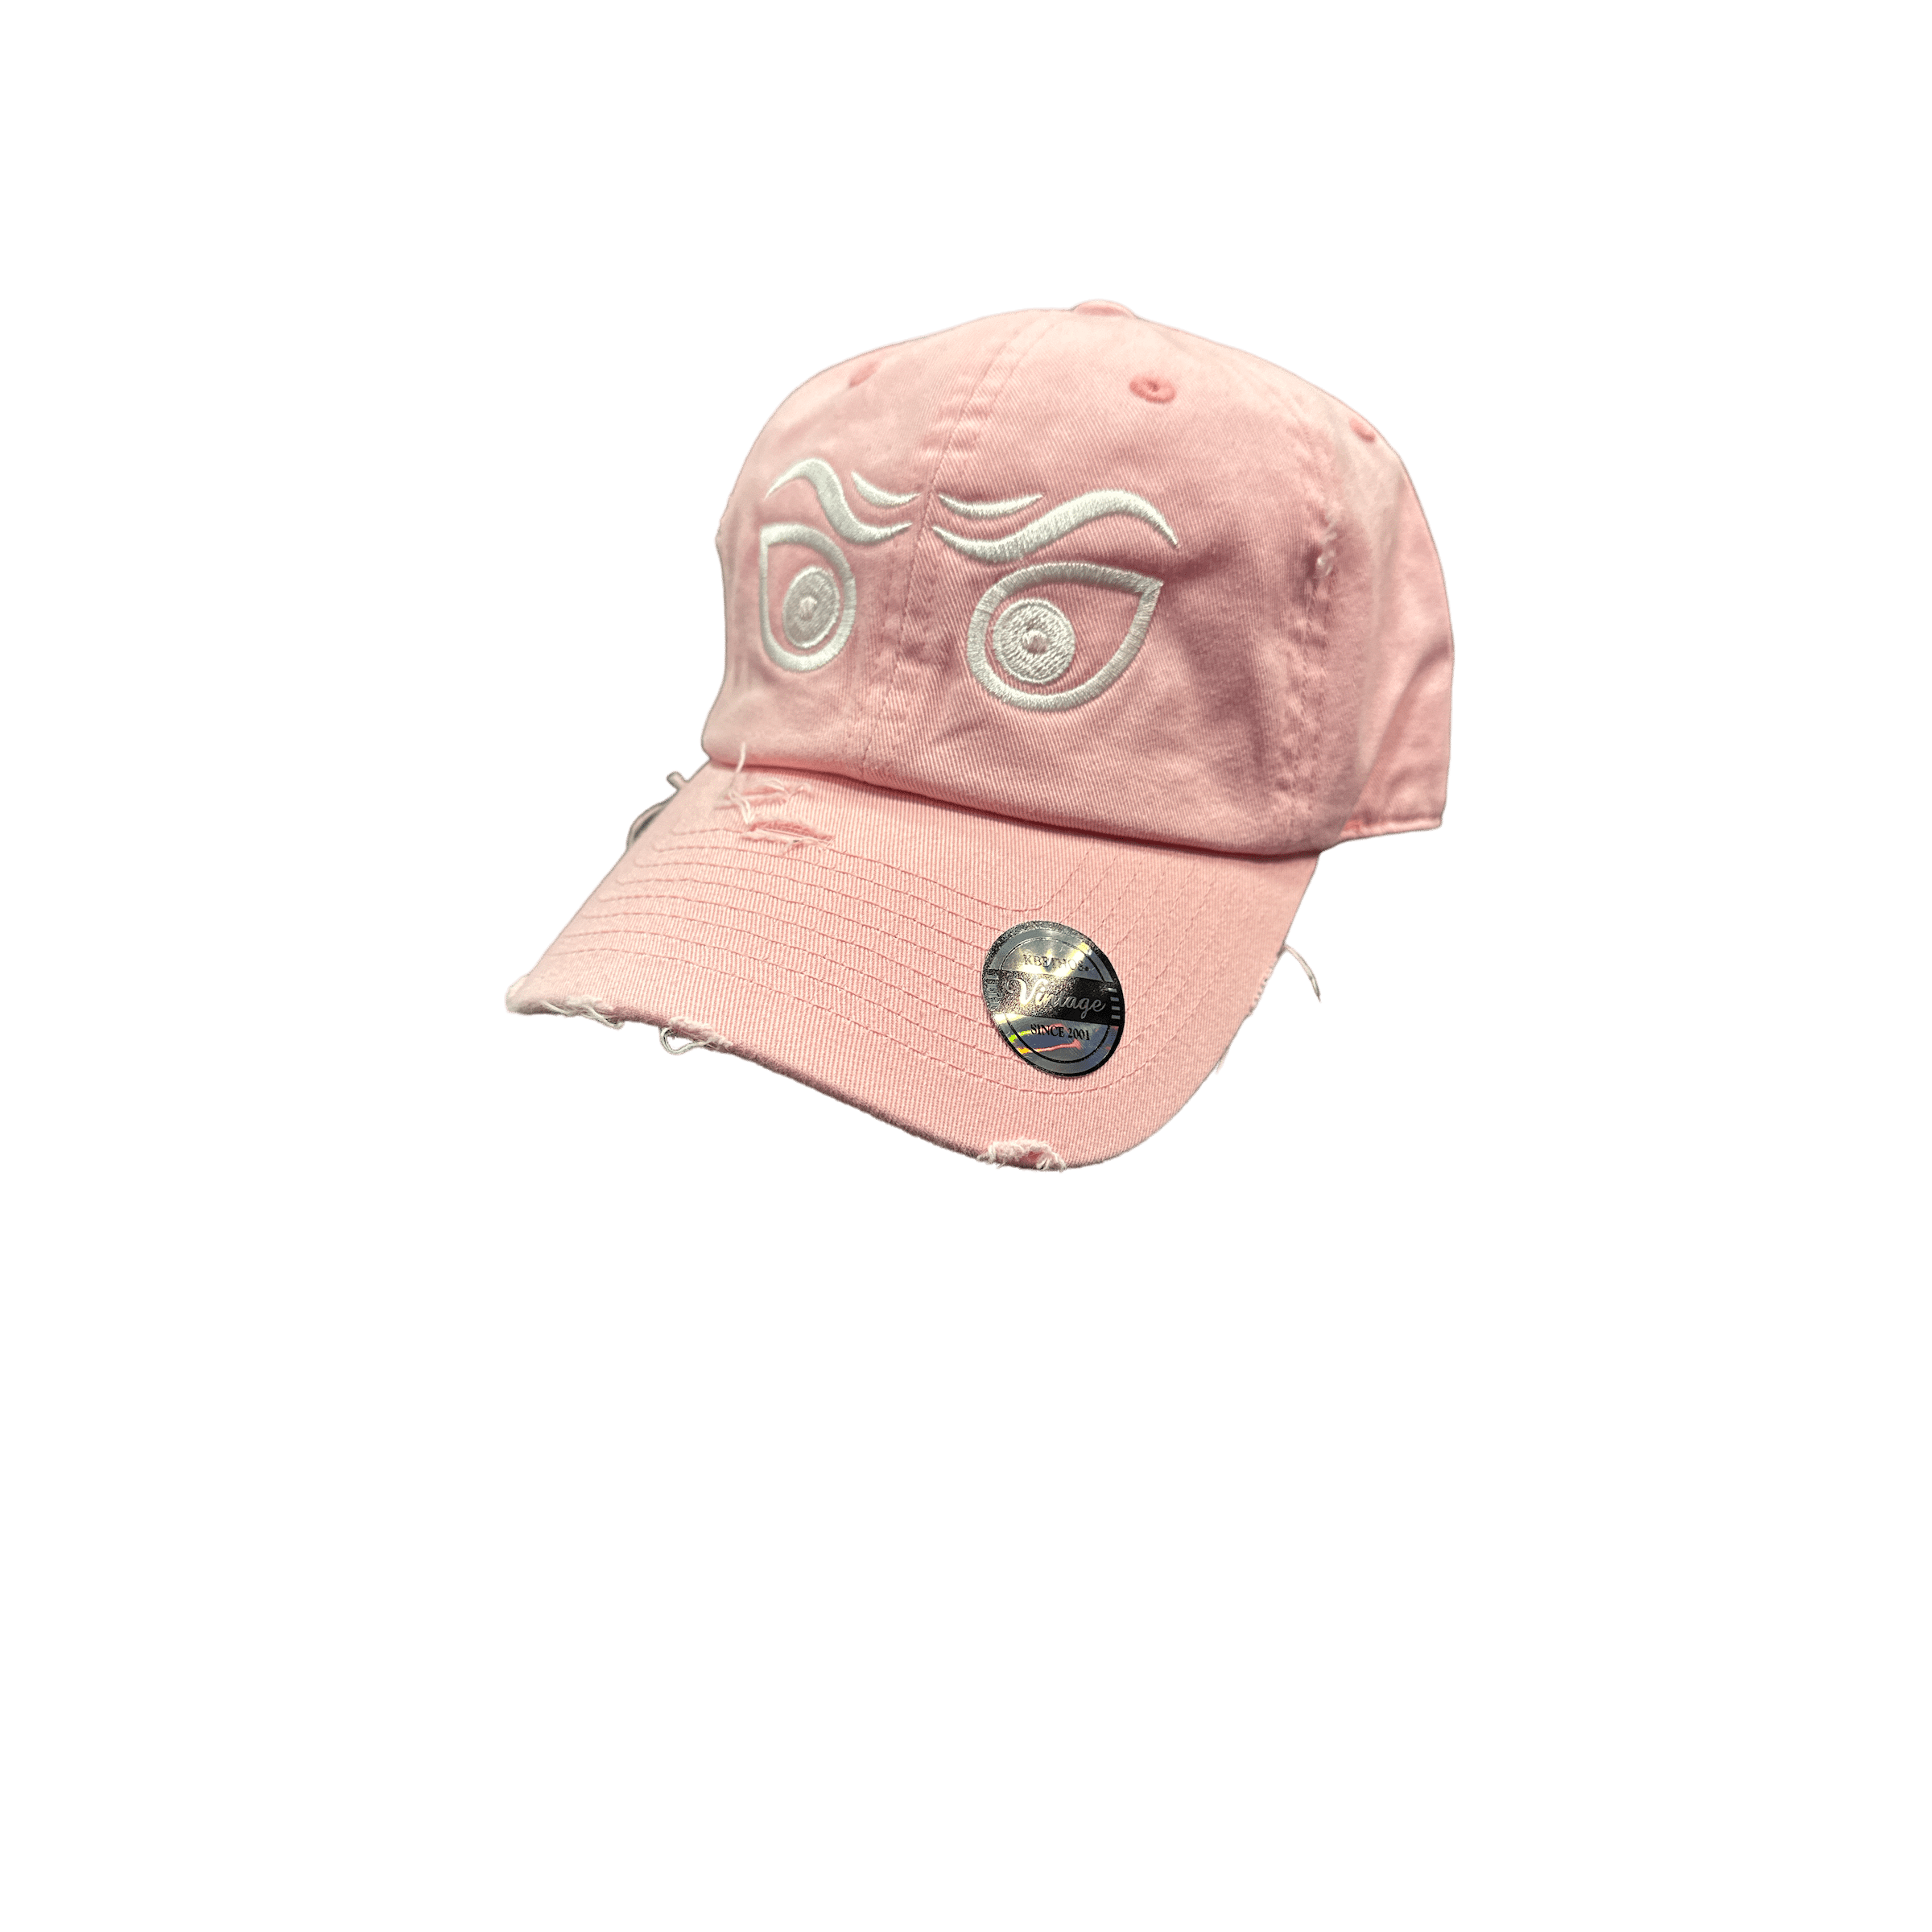 Mastermind315 Pink, white creep Mastermind cap